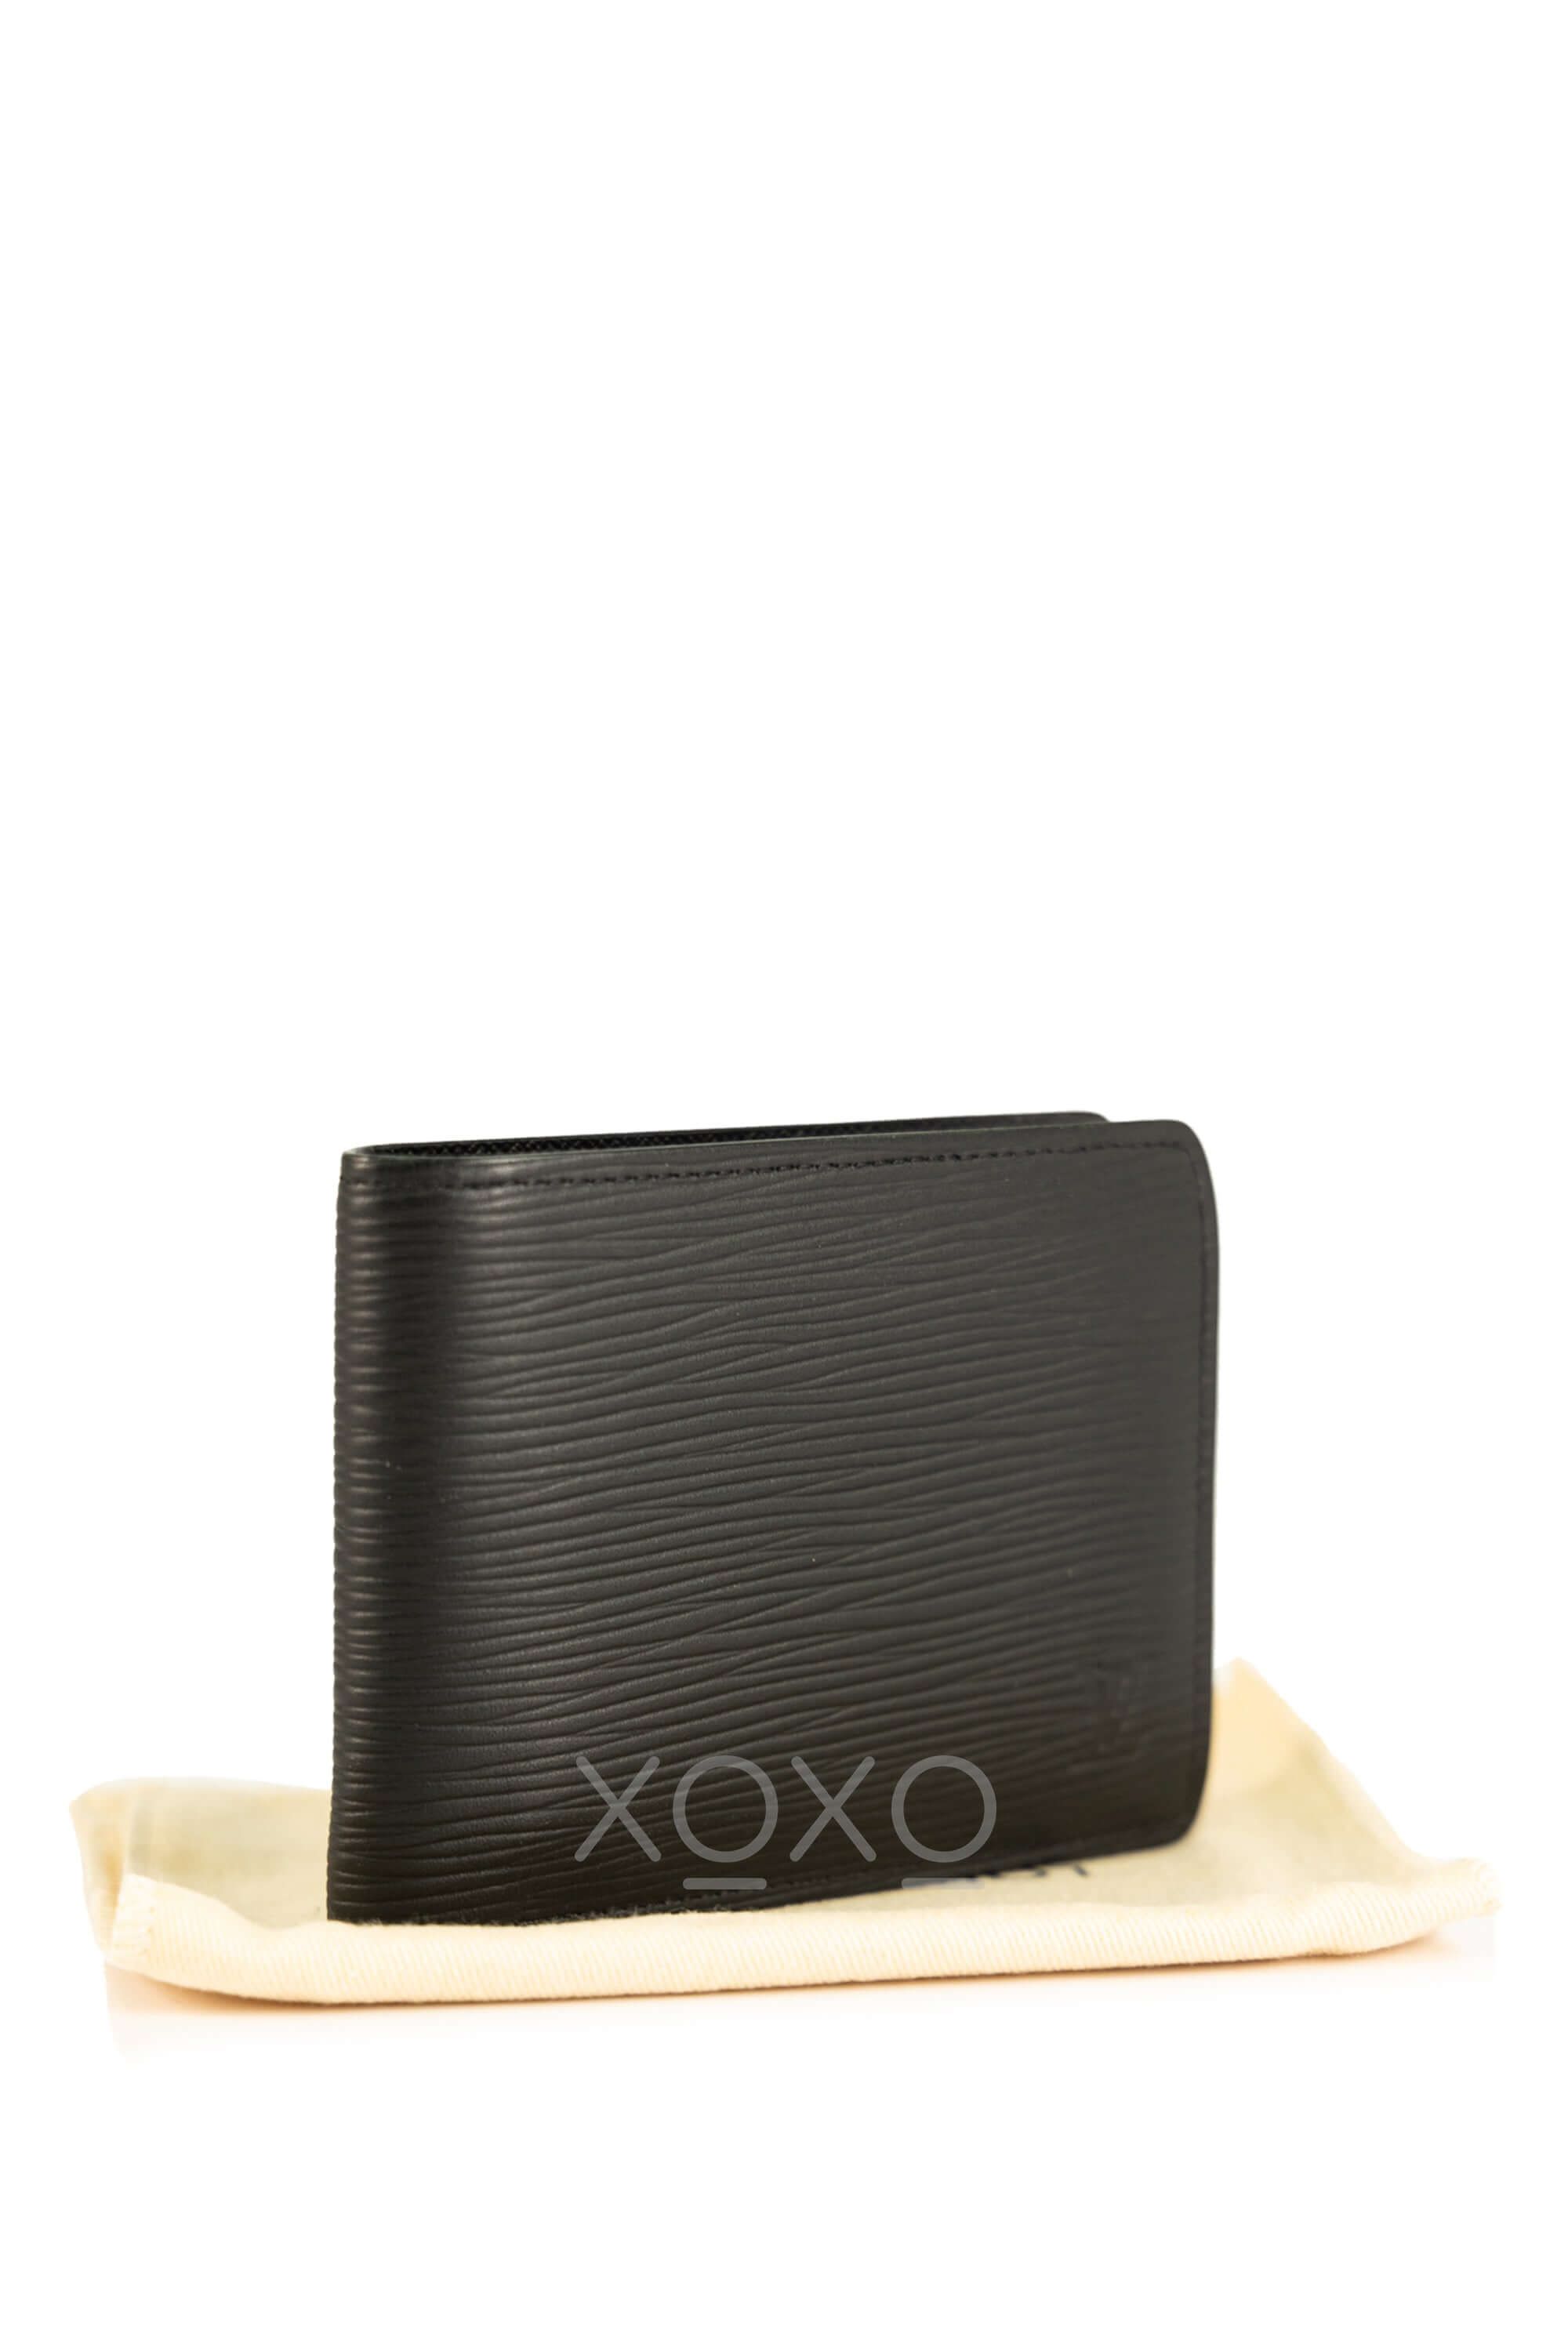 Slender Wallet Epi Leather - Personalisation M60332